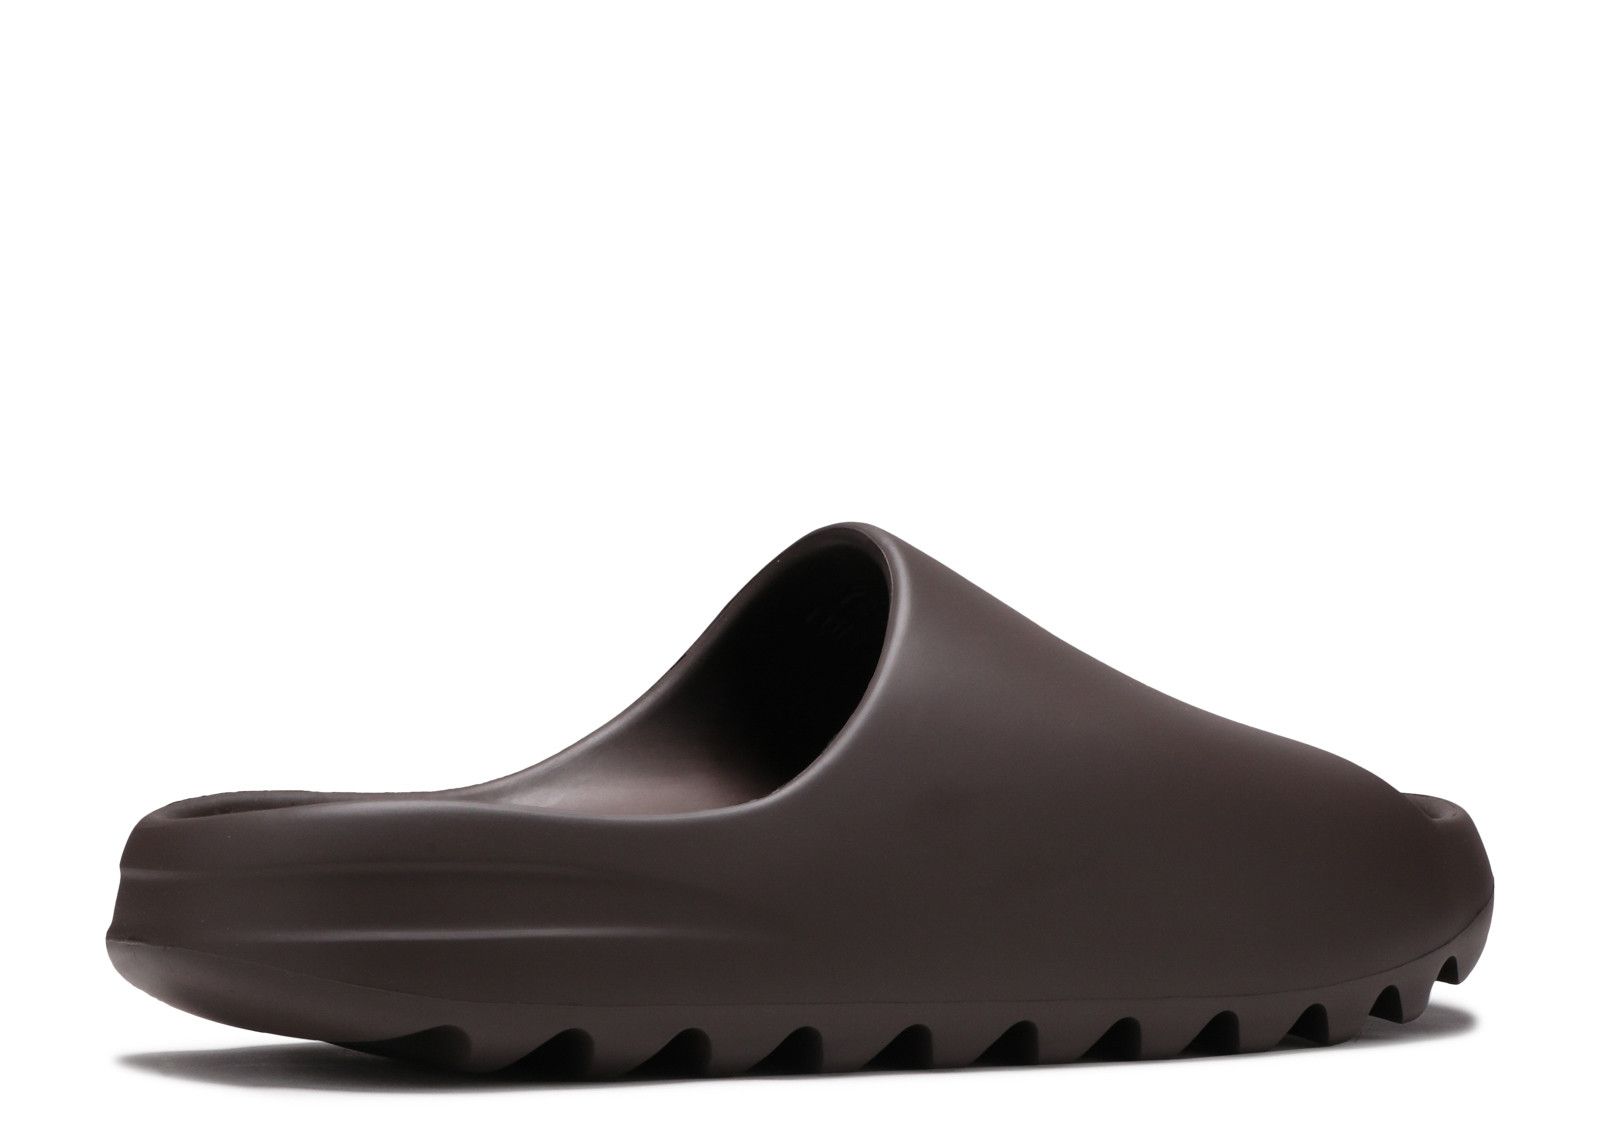 Yeezy Slides 'Soot' 2021 - Adidas - GX6141 - soot/soot/soot | Flight Club